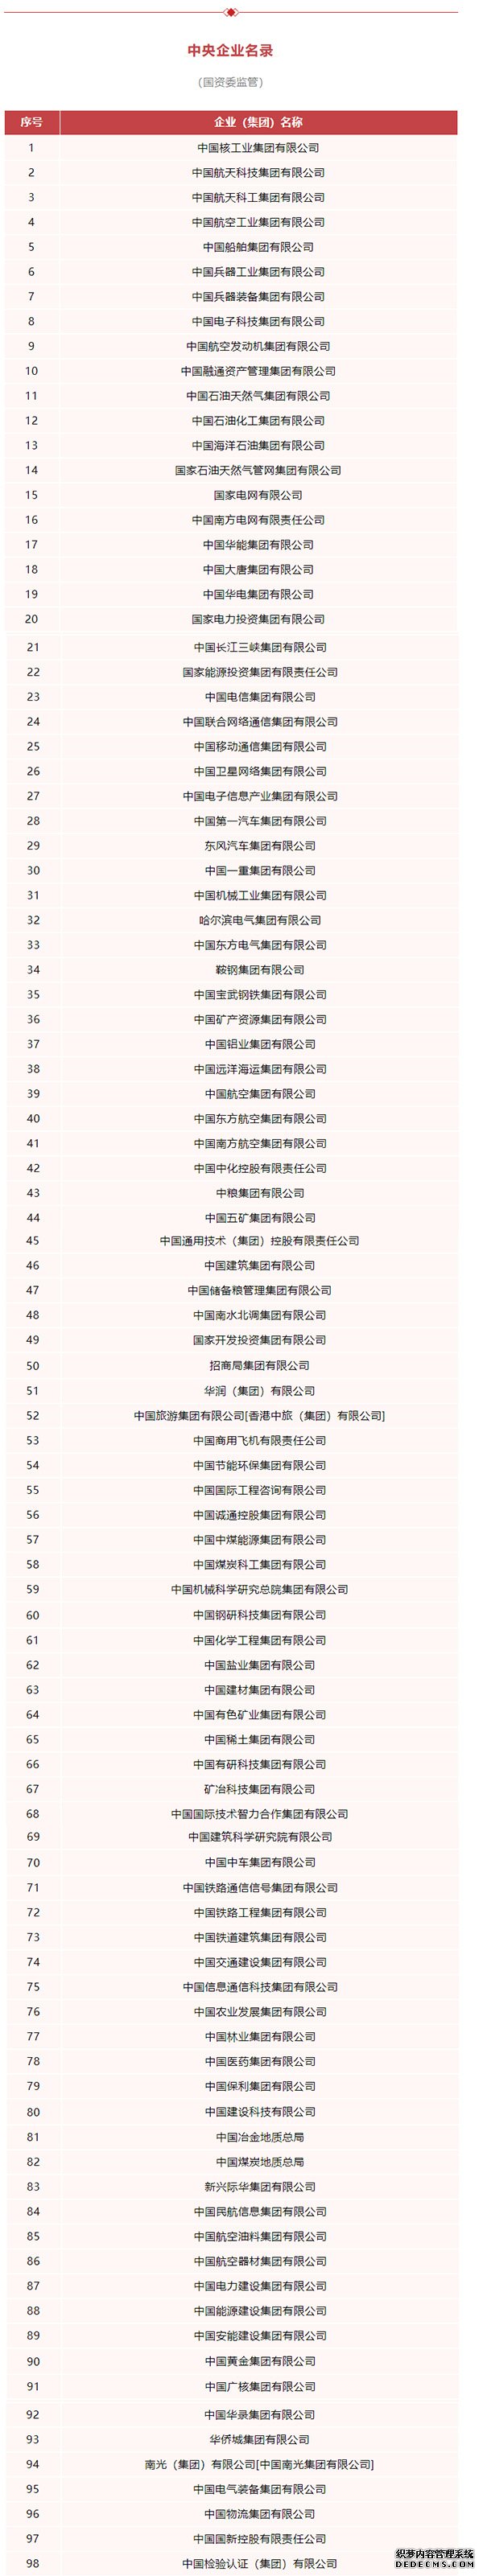 中国南水北调集团被列入国资委监管中央企业名单